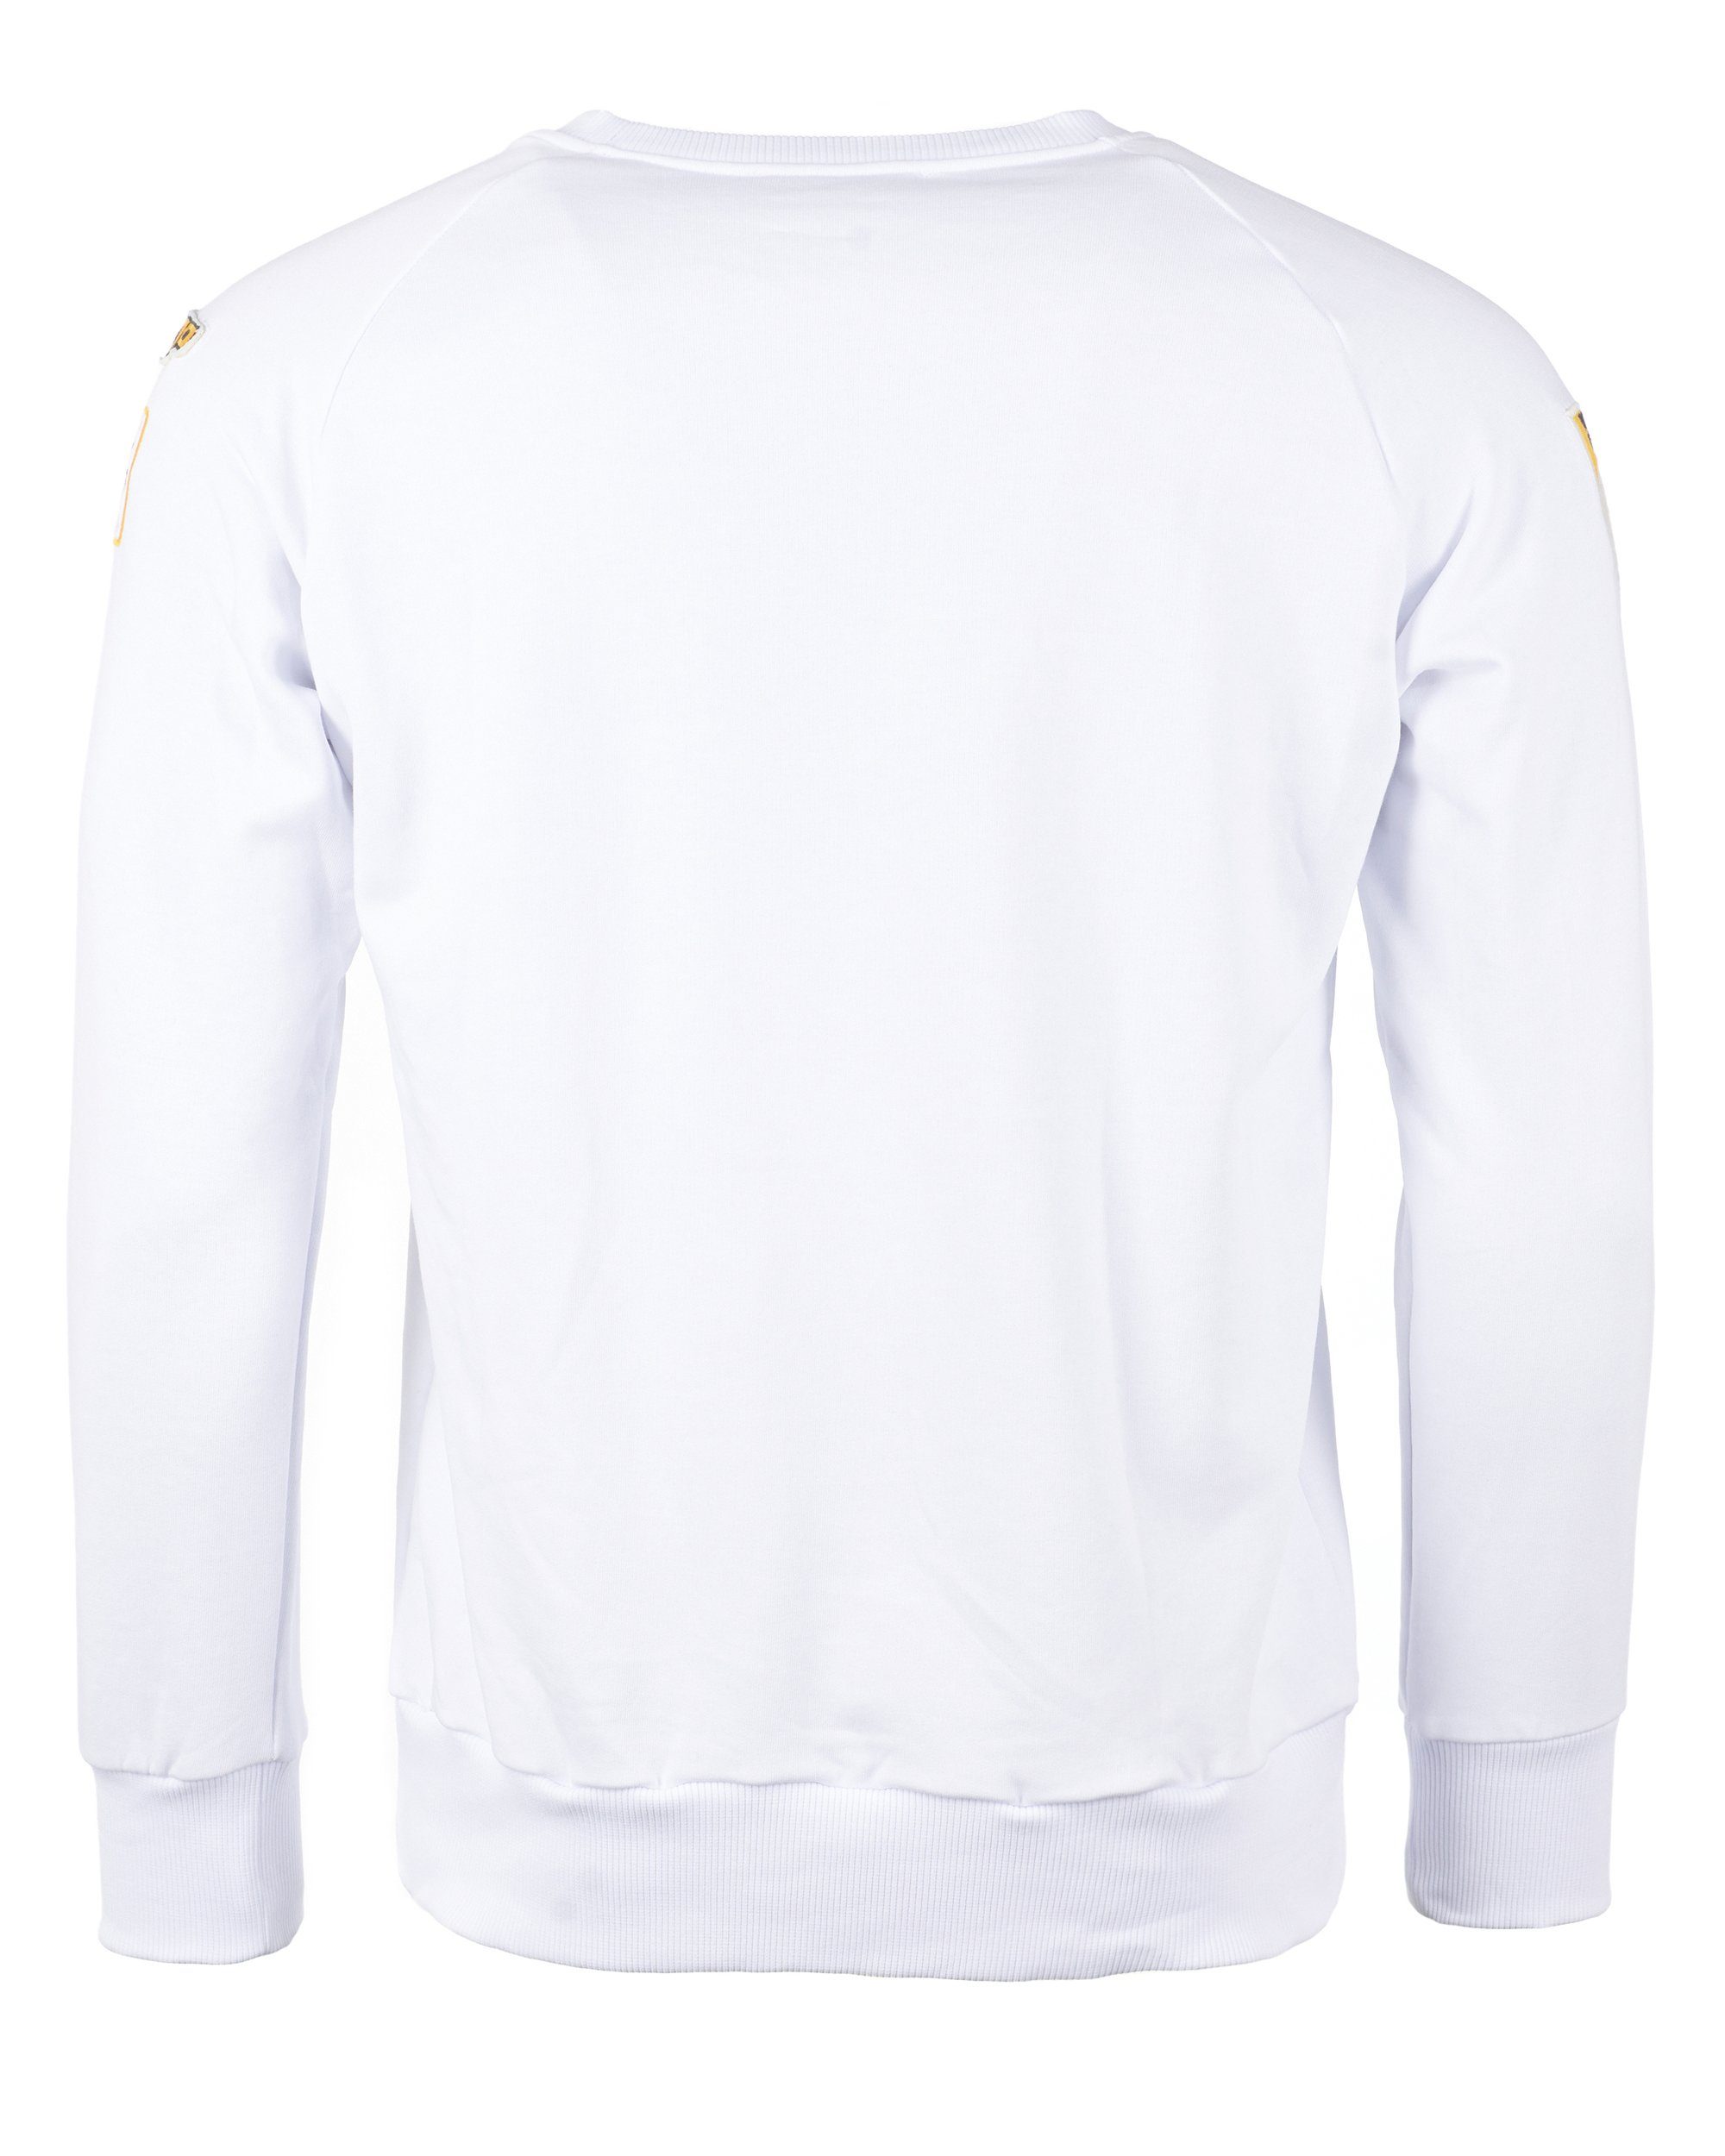 GUN Sweater Dell TG20193011 white TOP